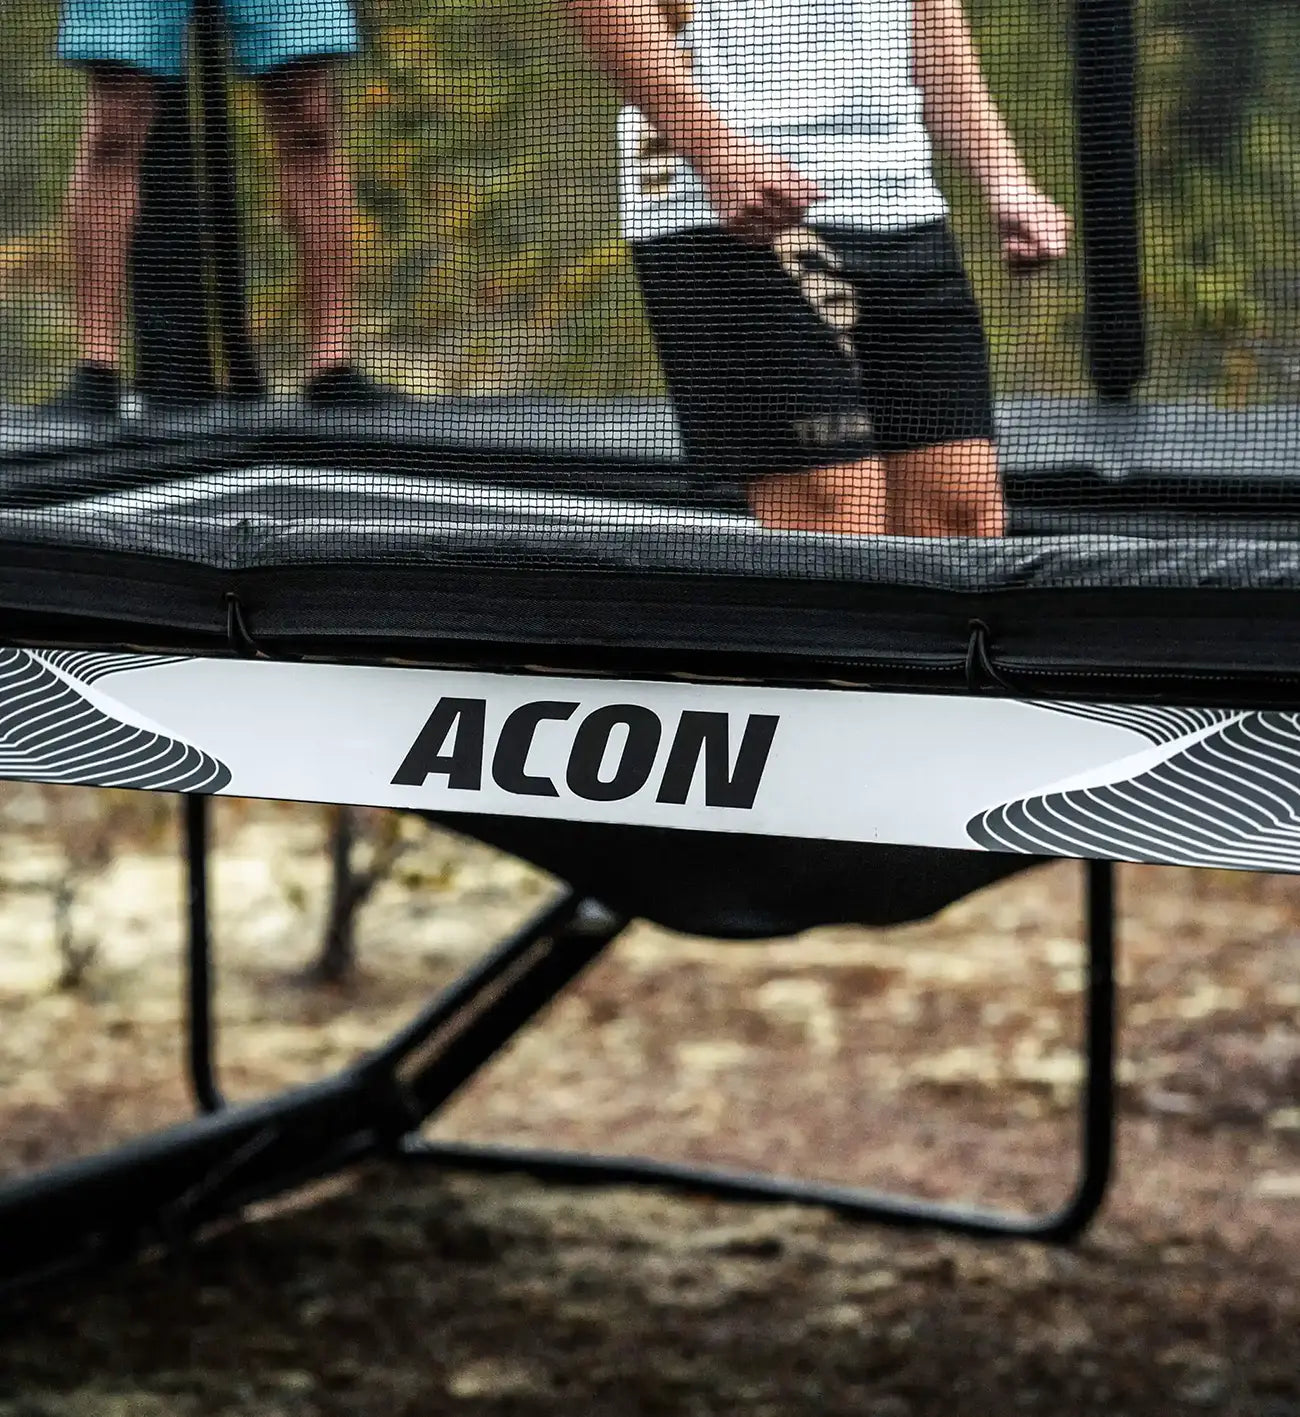 Les pieds d'un sauteur sur le trampoline Acon X pendant la phase de descente. 